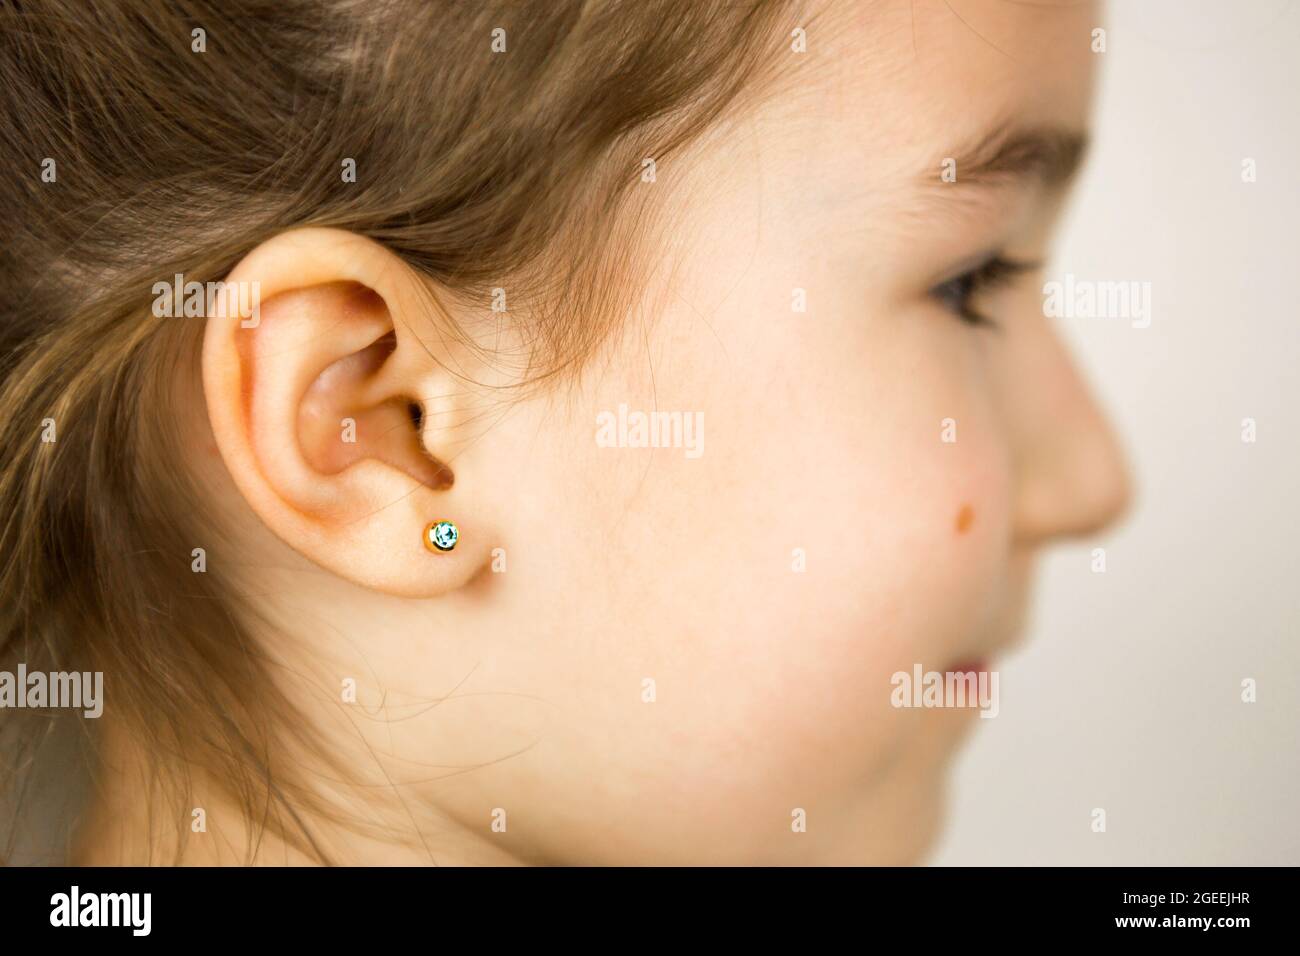 Perçage d'oreilles chez un enfant - une fille montre un anneau auriculaire  dans son oreille fait d'un alliage médical. Fond blanc, portrait d'une fille  avec une taupe sur sa joue Photo Stock -